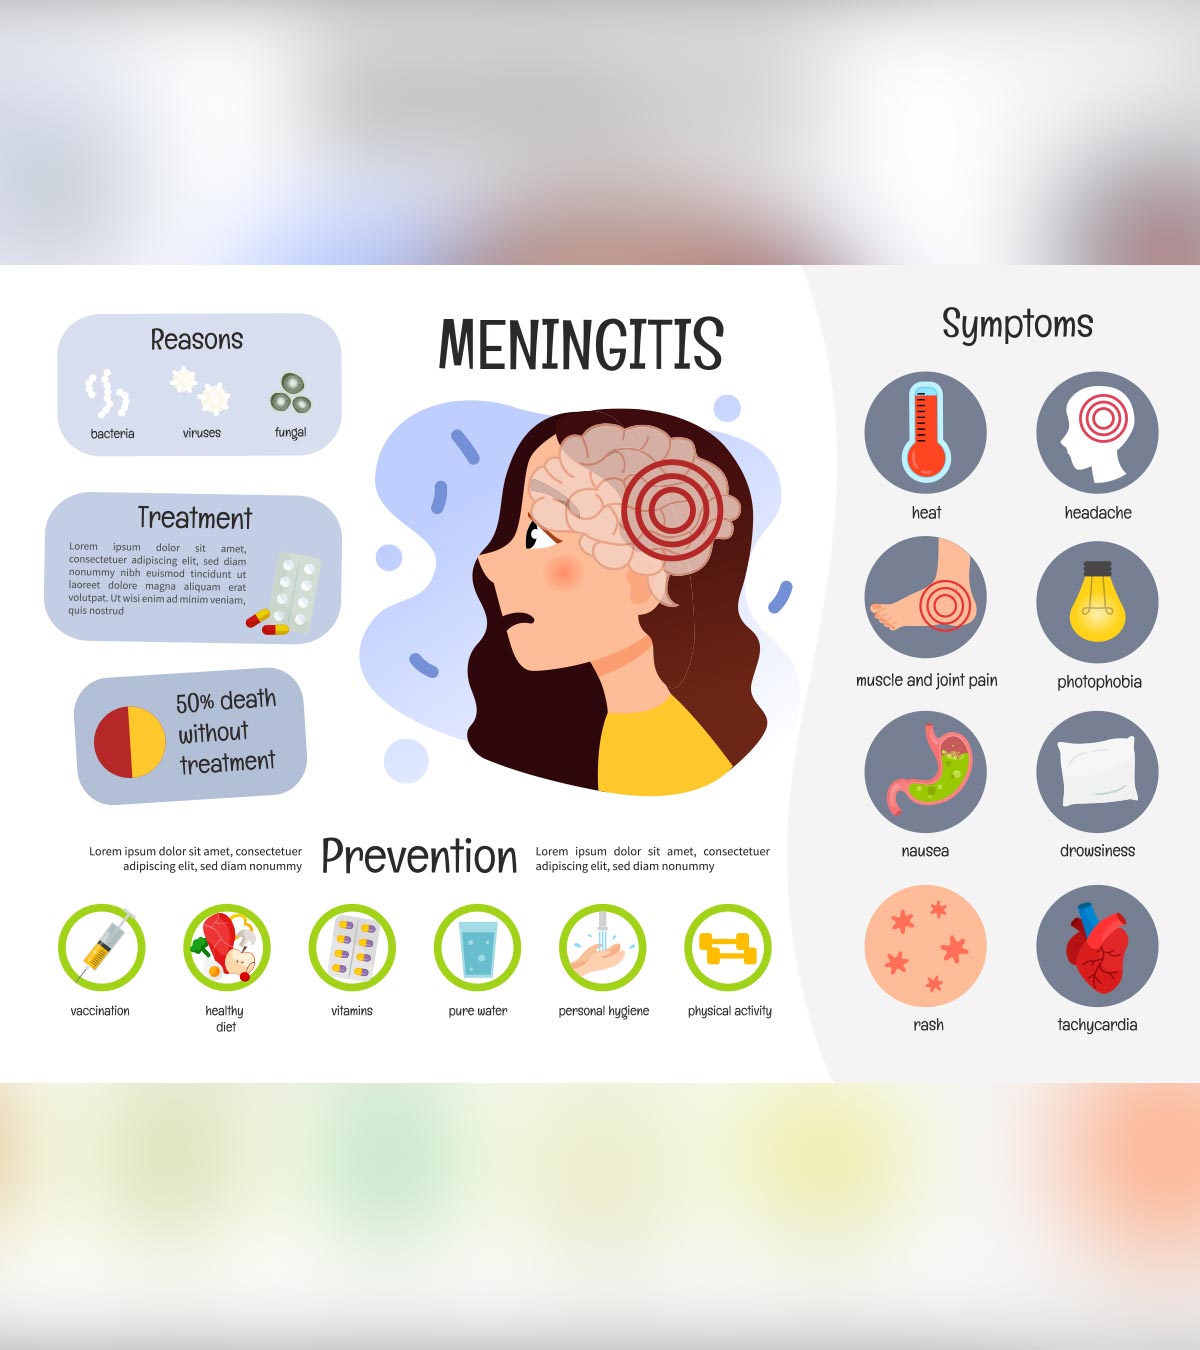 meningitis symptoms in children